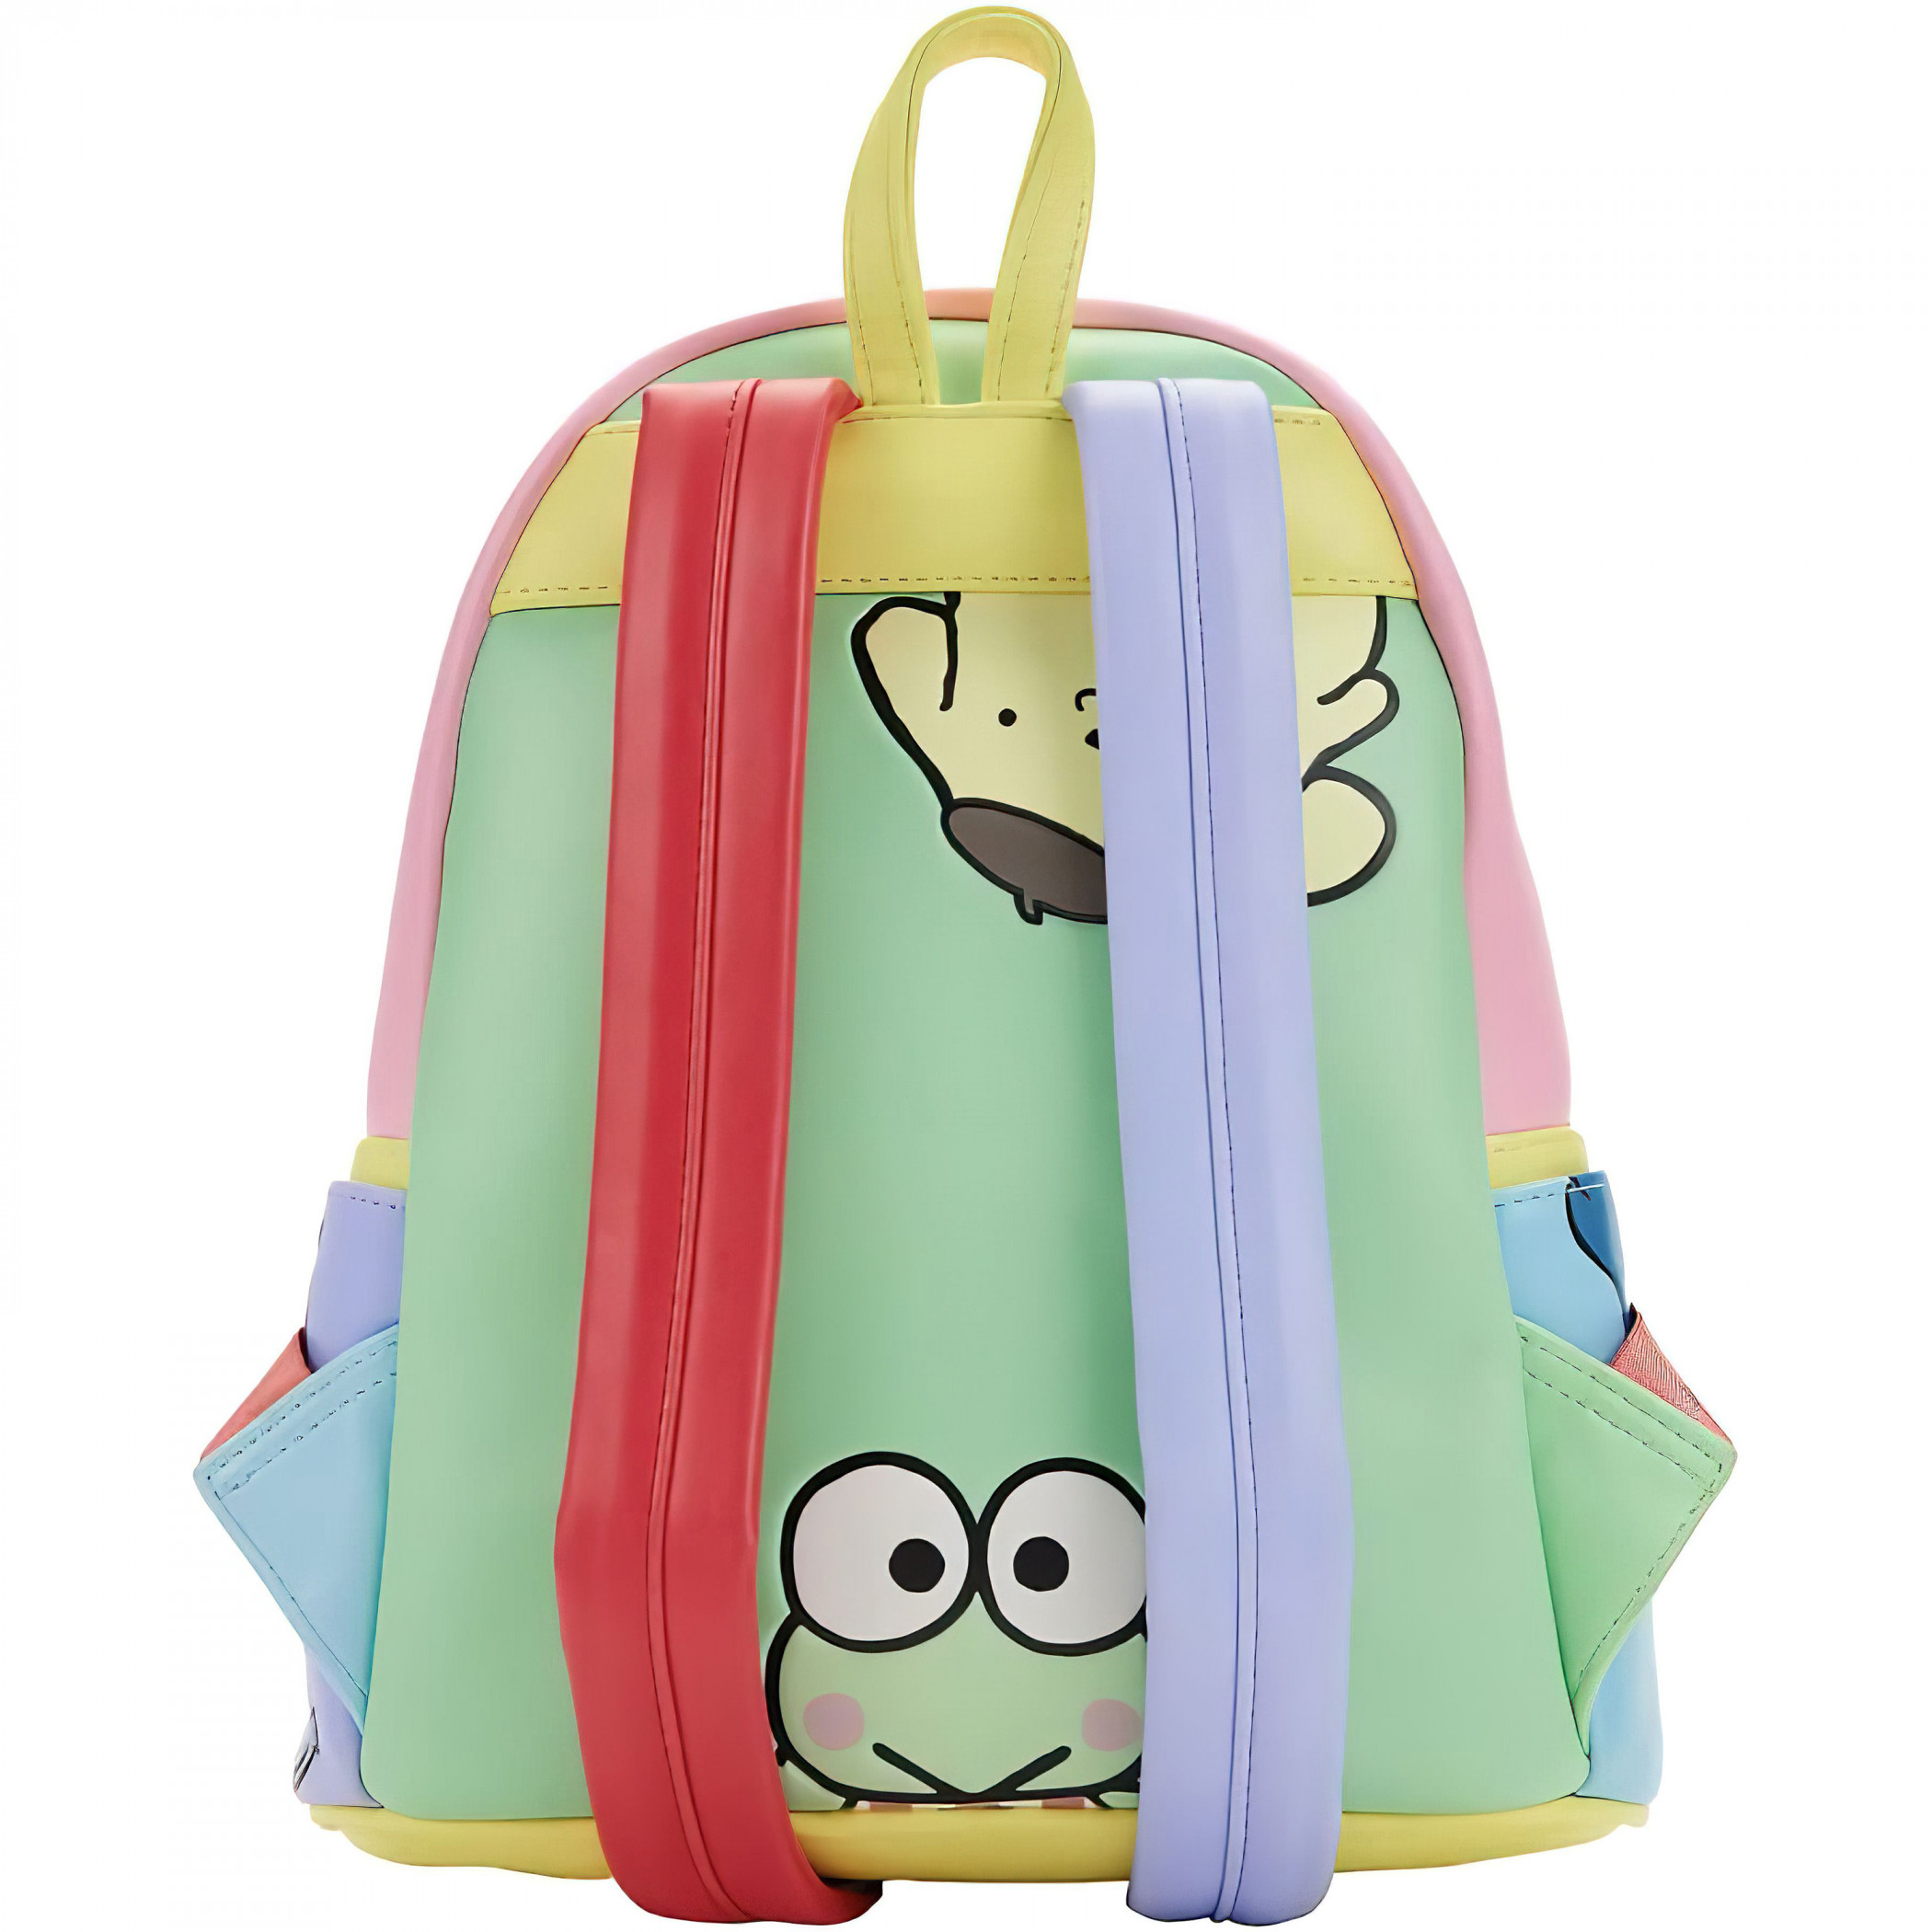 Sanrio Hello Kitty & Friends Color Block Mini Backpack